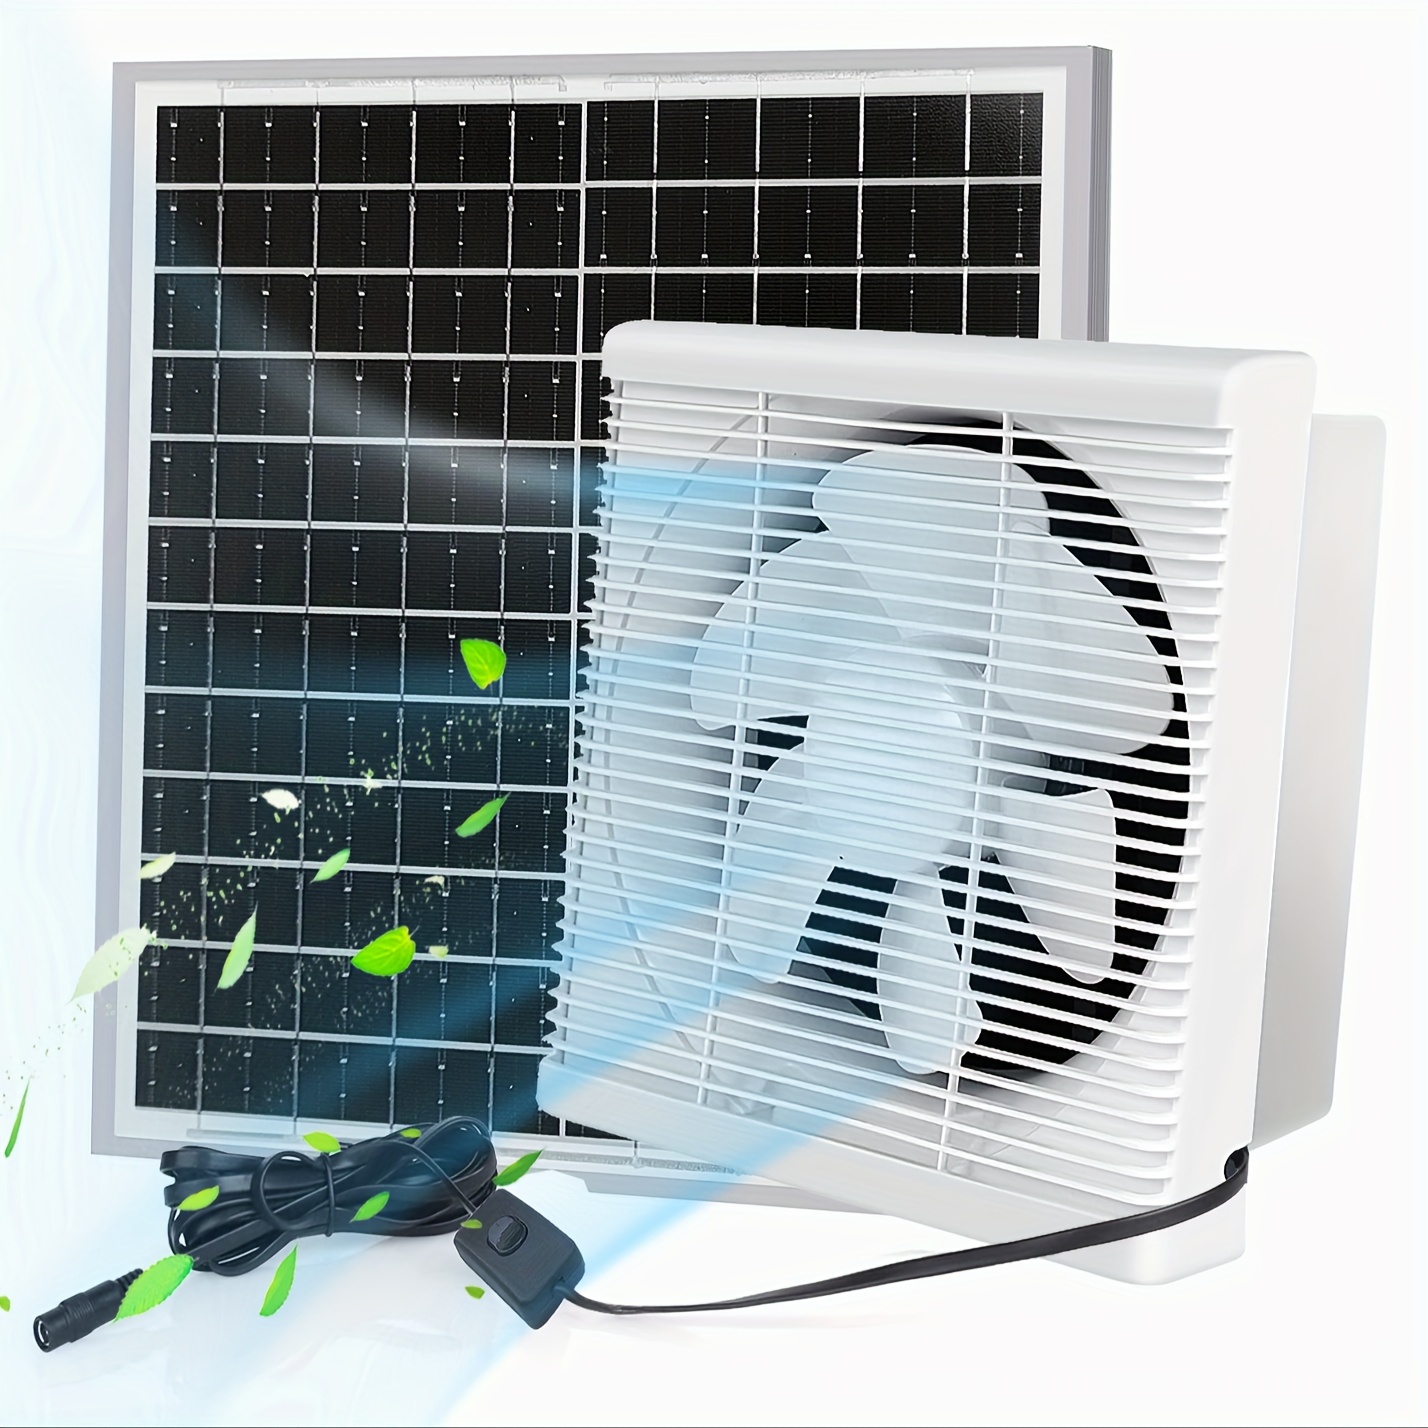 Extracteur d'air solaire 12W, Mini ventilateur pour serre